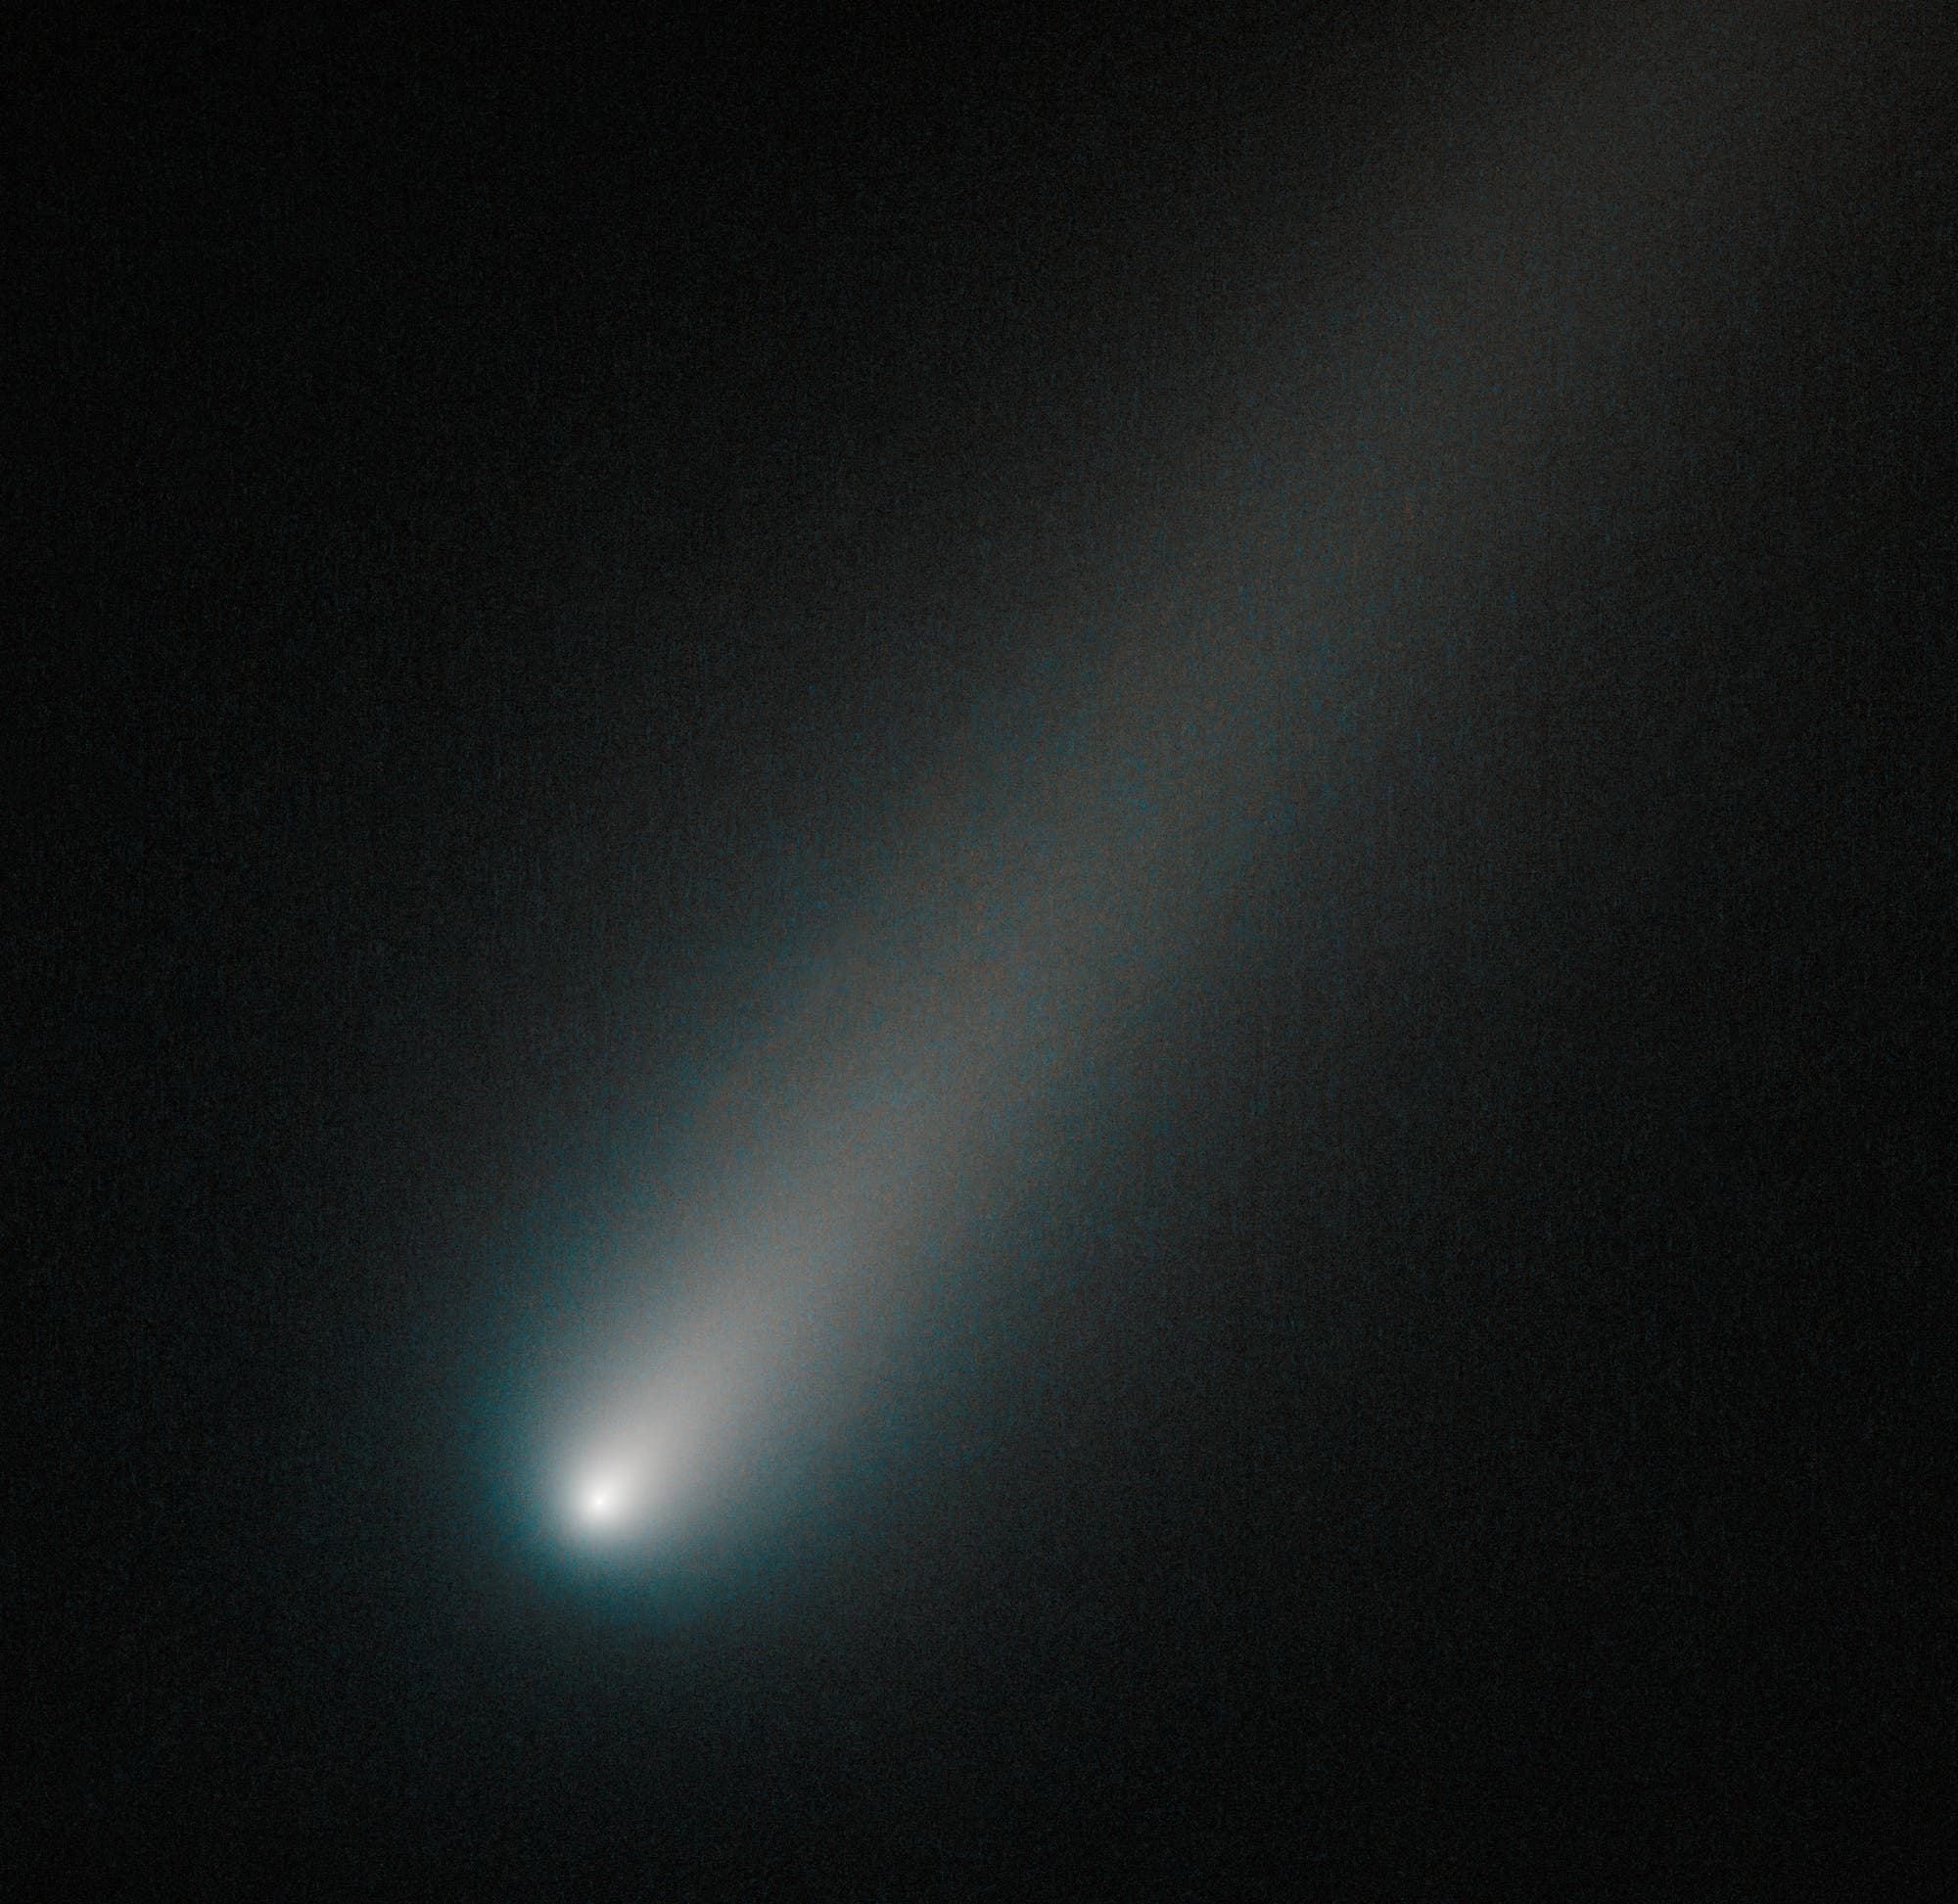 Komet ISON am 9. Oktober 2013 (HST-Aufnahme)